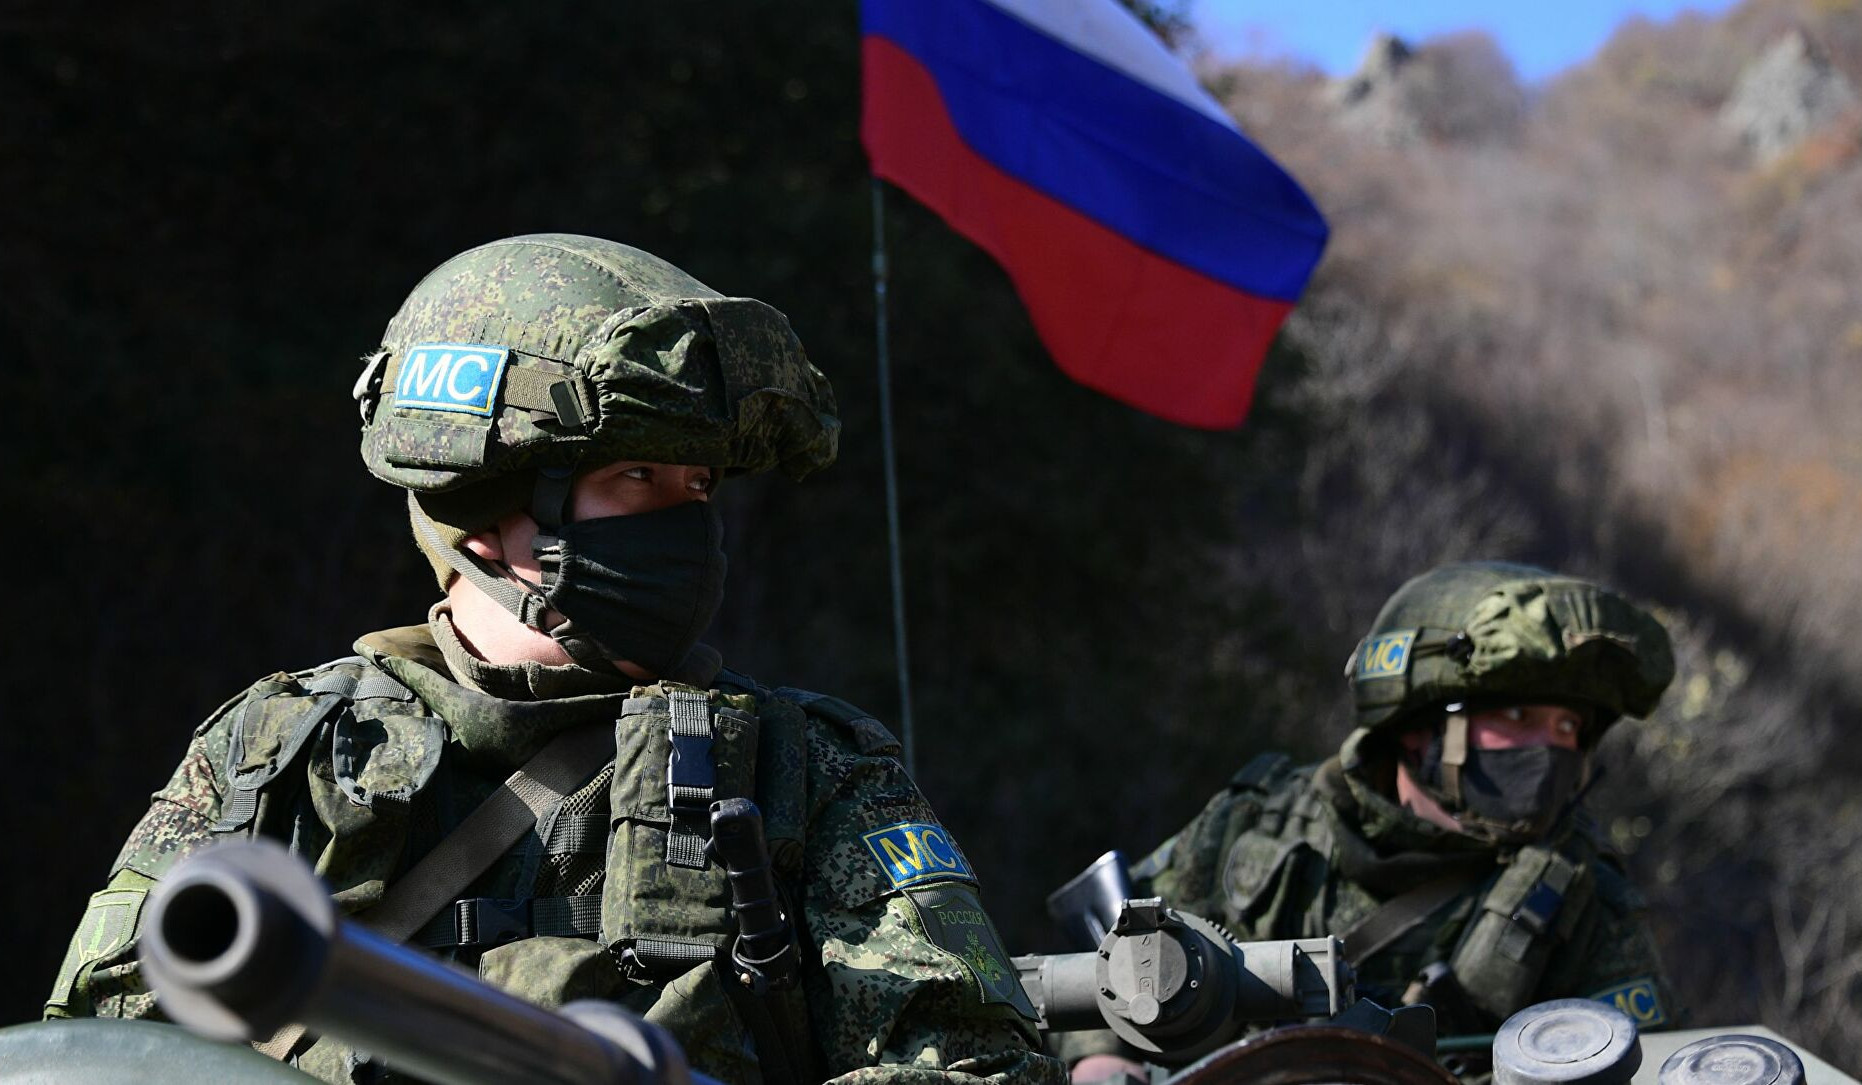 Շուշիի շրջանում ռուսական խաղաղապահ զորակազմի ևս մեկ դիտակետ է փակվել. ՌԴ ՊՆ